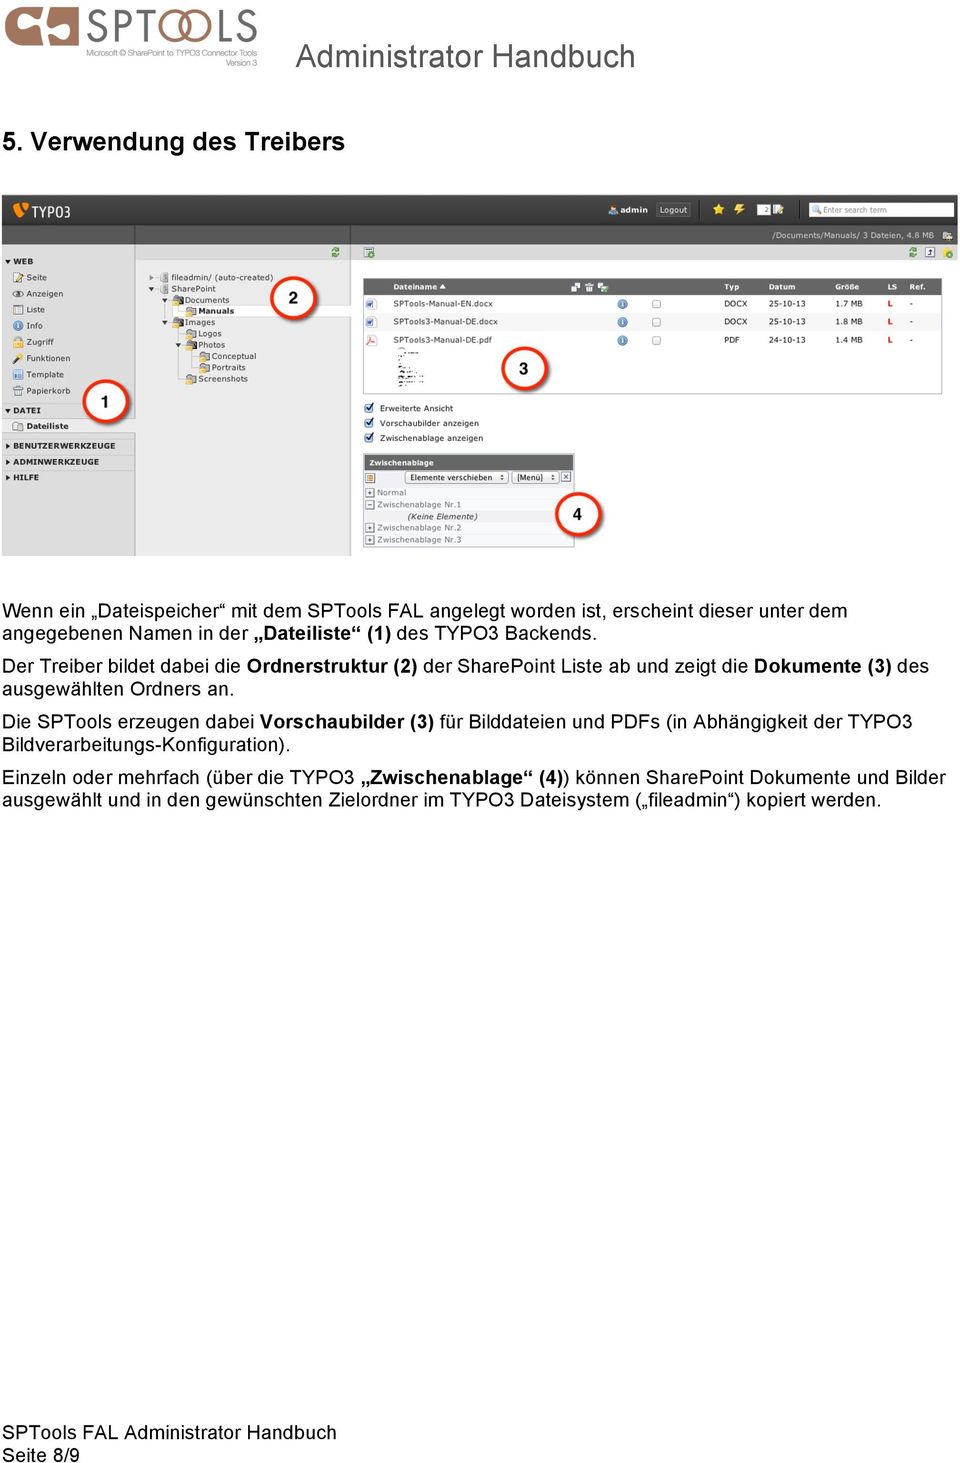 Die SPTools erzeugen dabei Vorschaubilder (3) für Bilddateien und PDFs (in Abhängigkeit der TYPO3 Bildverarbeitungs-Konfiguration).